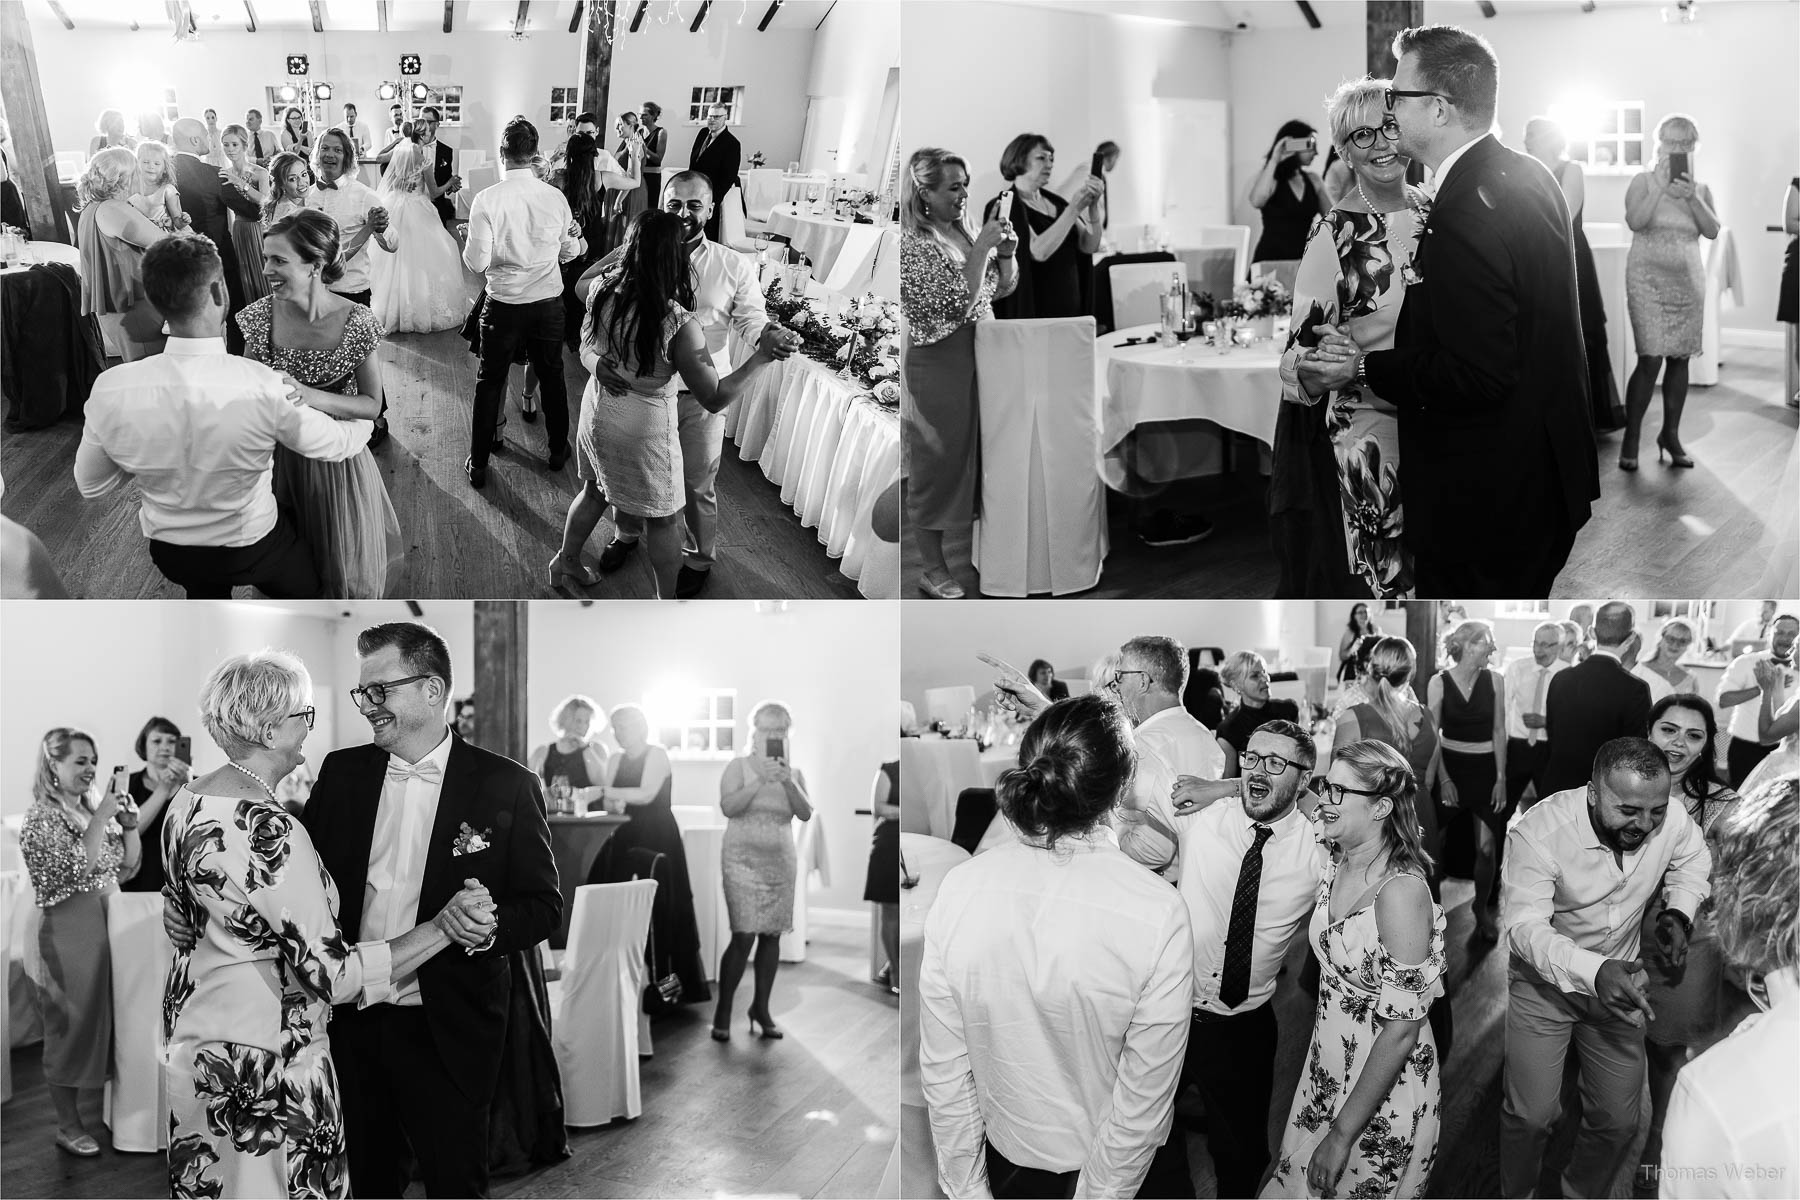 Tanz und Party auf der Hochzeitsfeier, Kirchliche Hochzeit in Rastede und Hochzeitsfeier in der Scheune St. Georg Rastede, Hochzeitsfotograf Thomas Weber aus Oldenburg